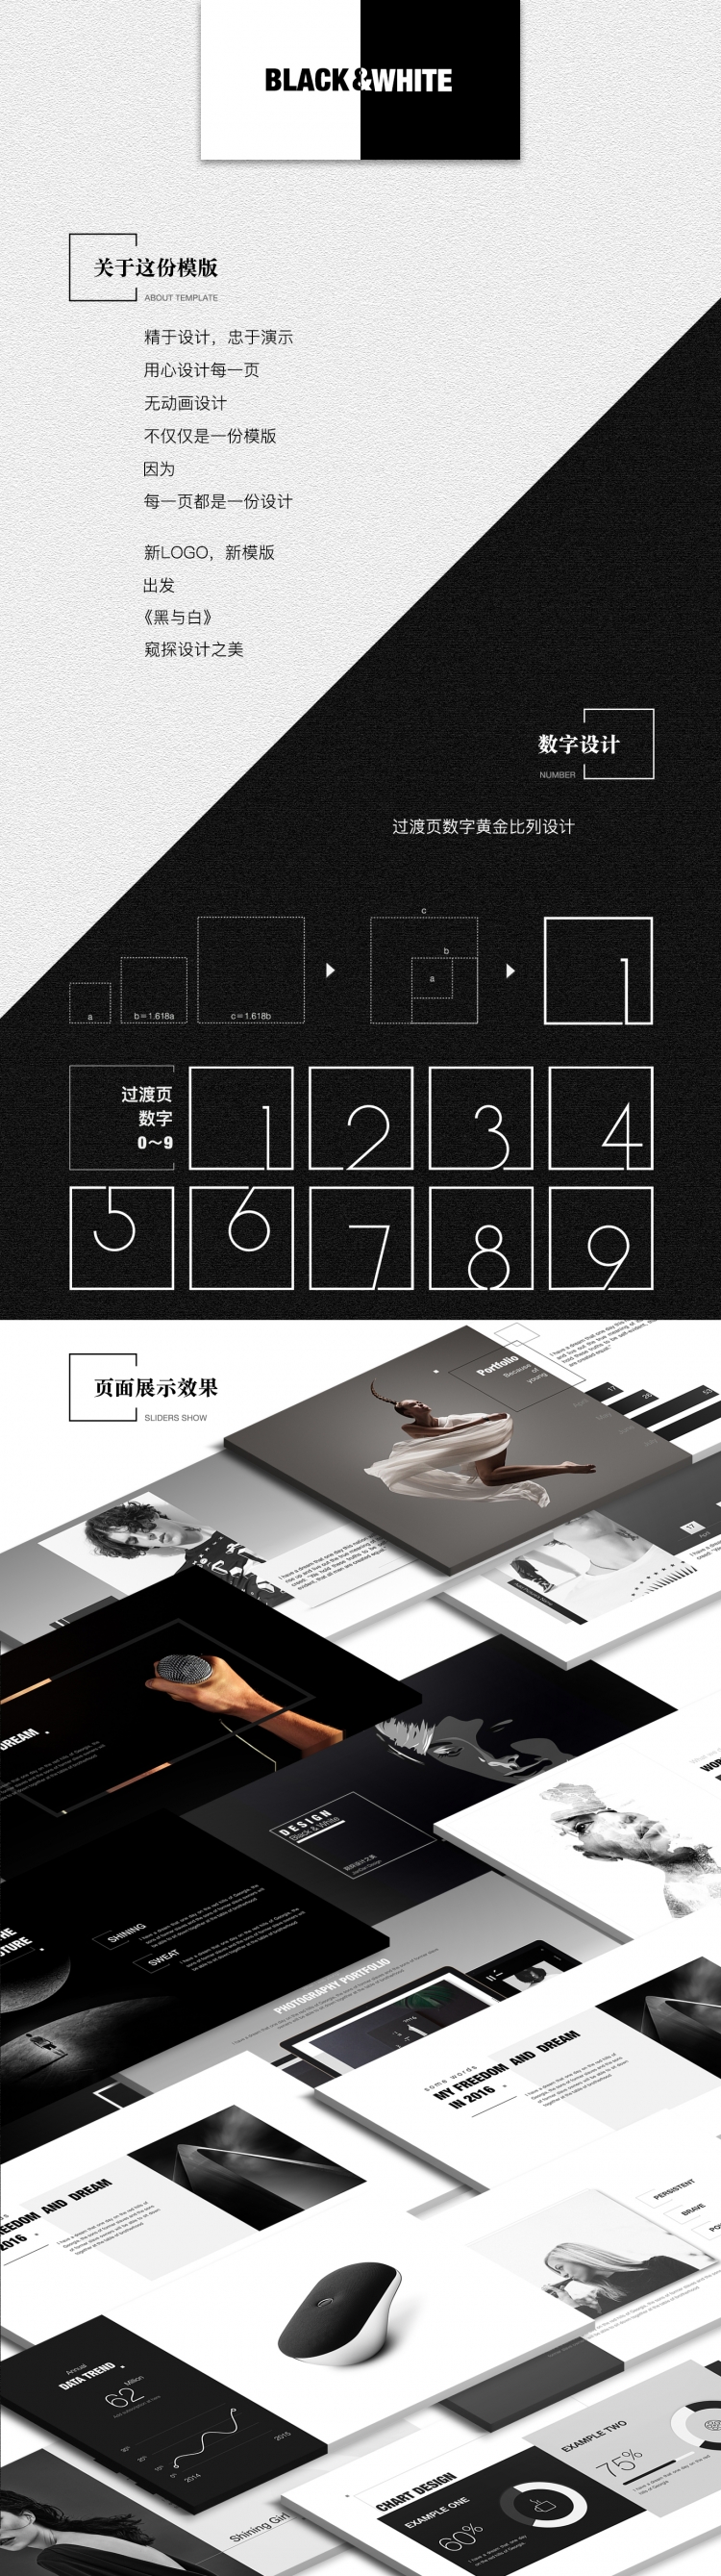 ［简单出品］时尚设计展示模版《Black&White》-PowerPoint